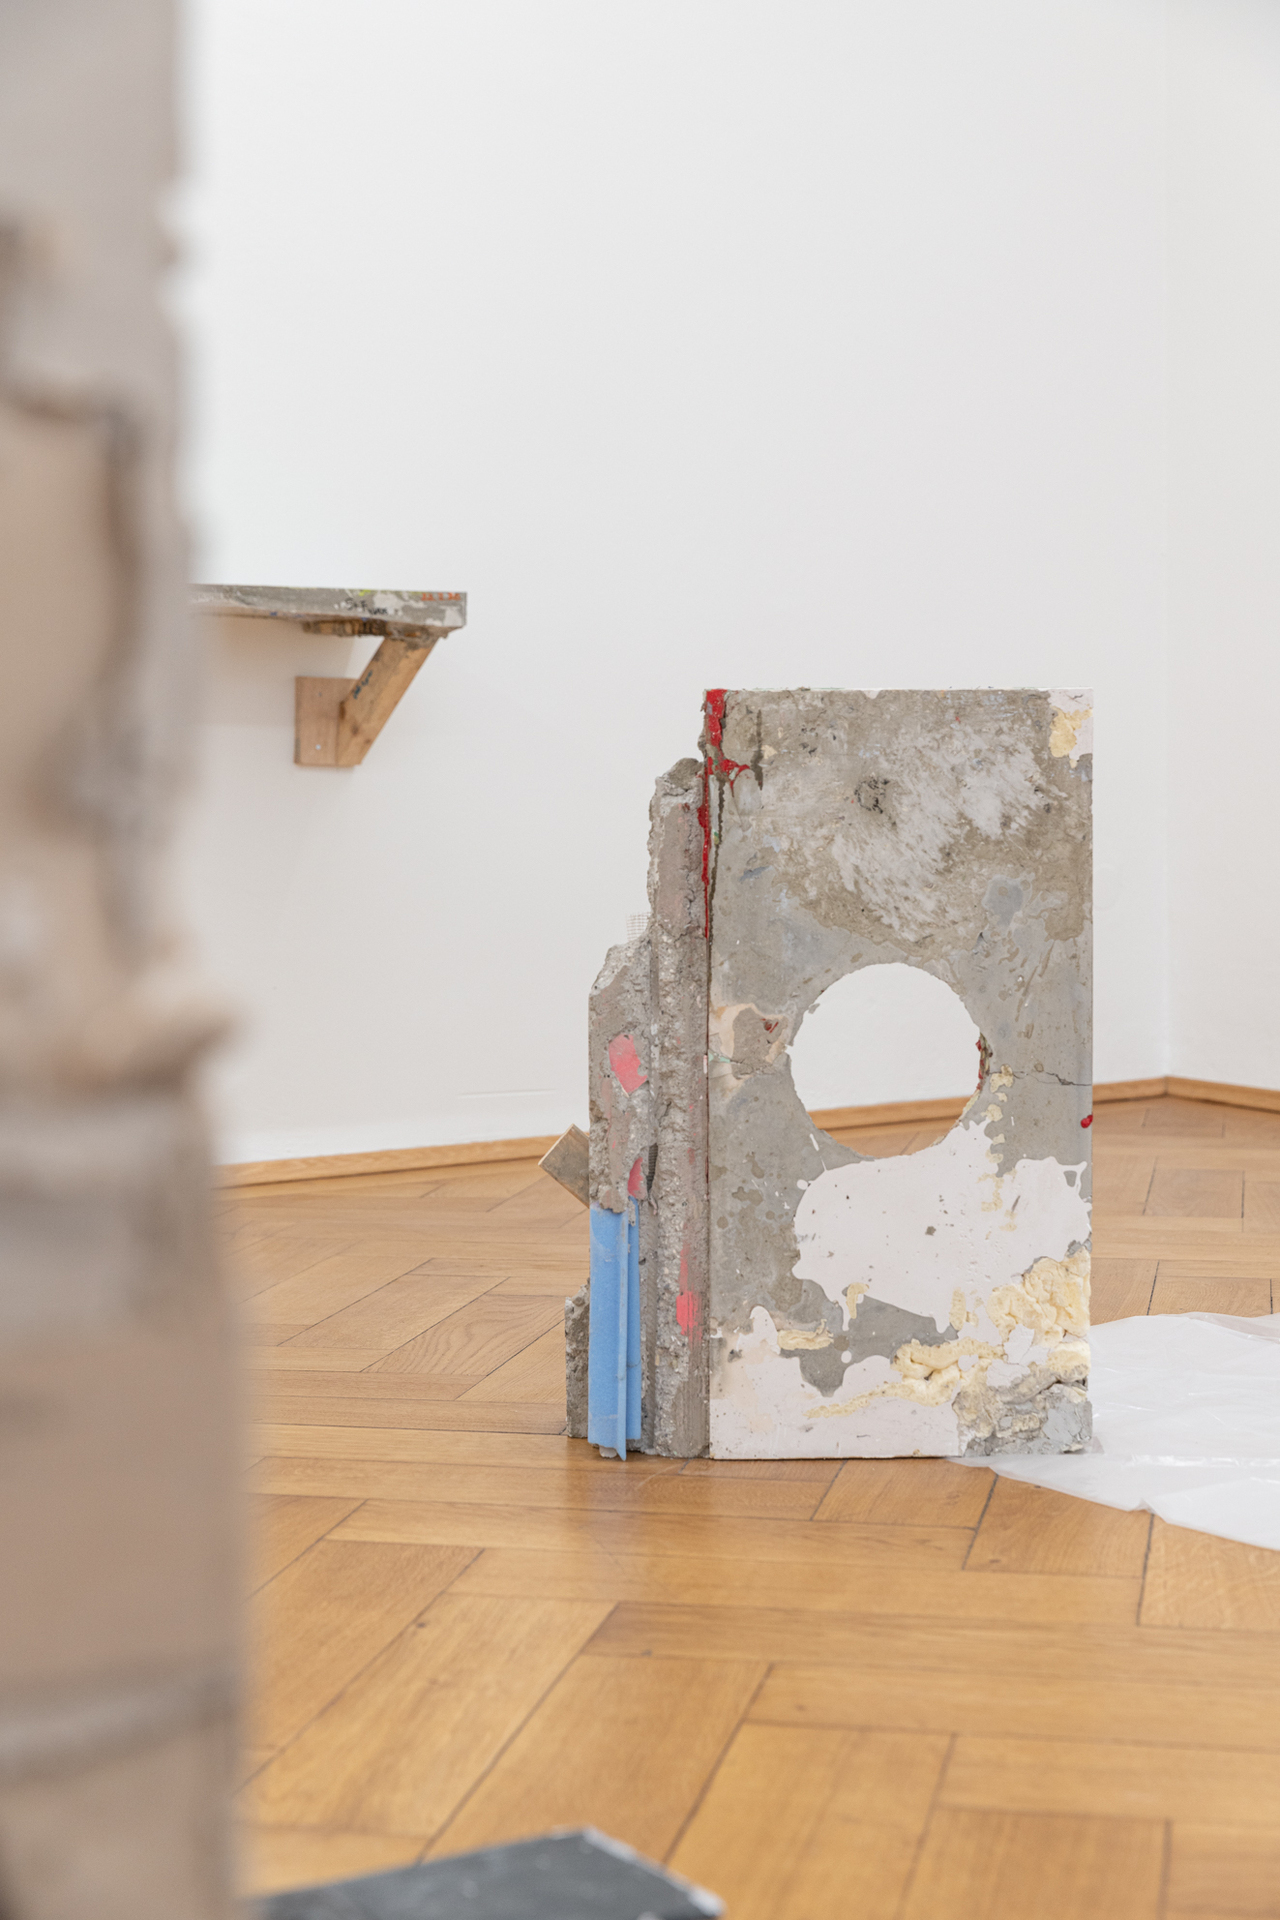 Installation view "unkultiviert" by Patrick Ostrowsky at Britta Rettberg Munich